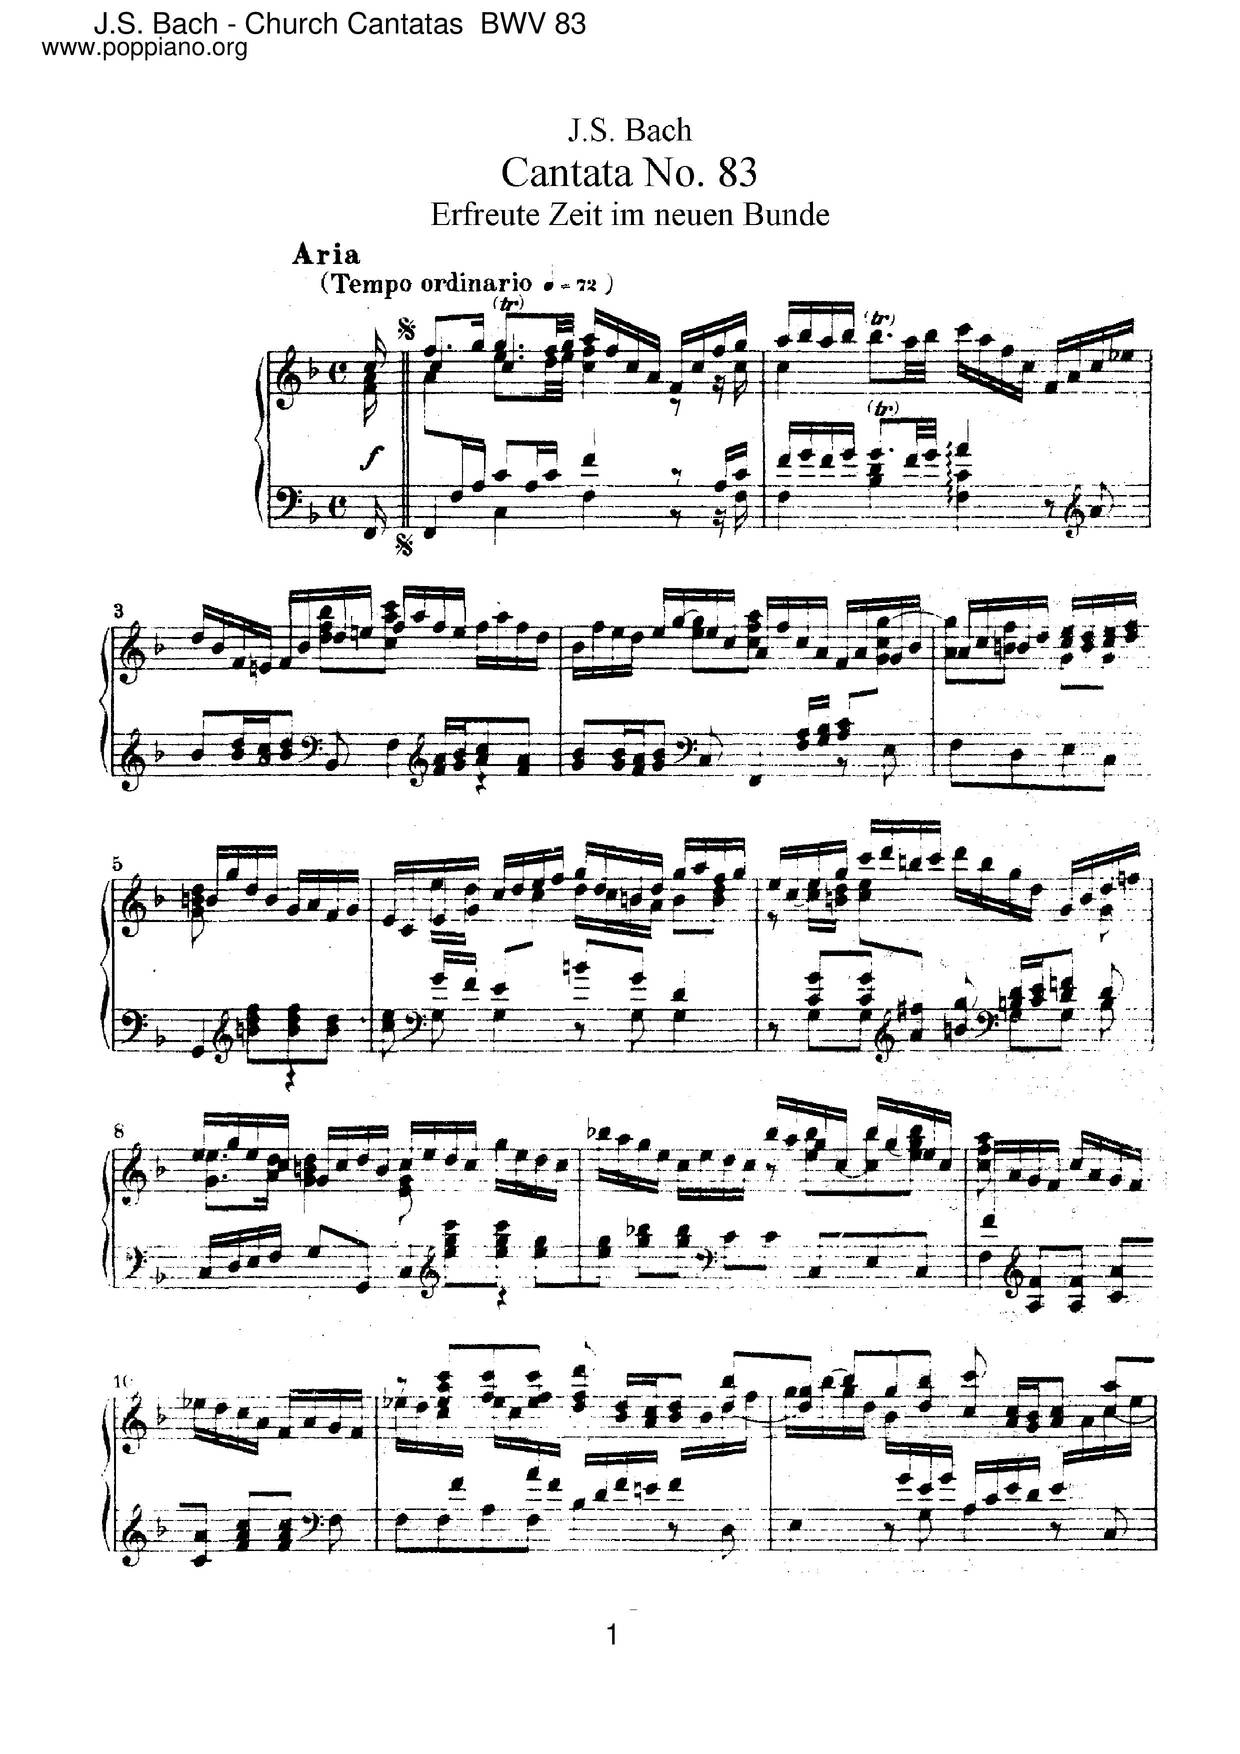 Erfreute Zeit Im Neuen Bunde, BWV 83ピアノ譜